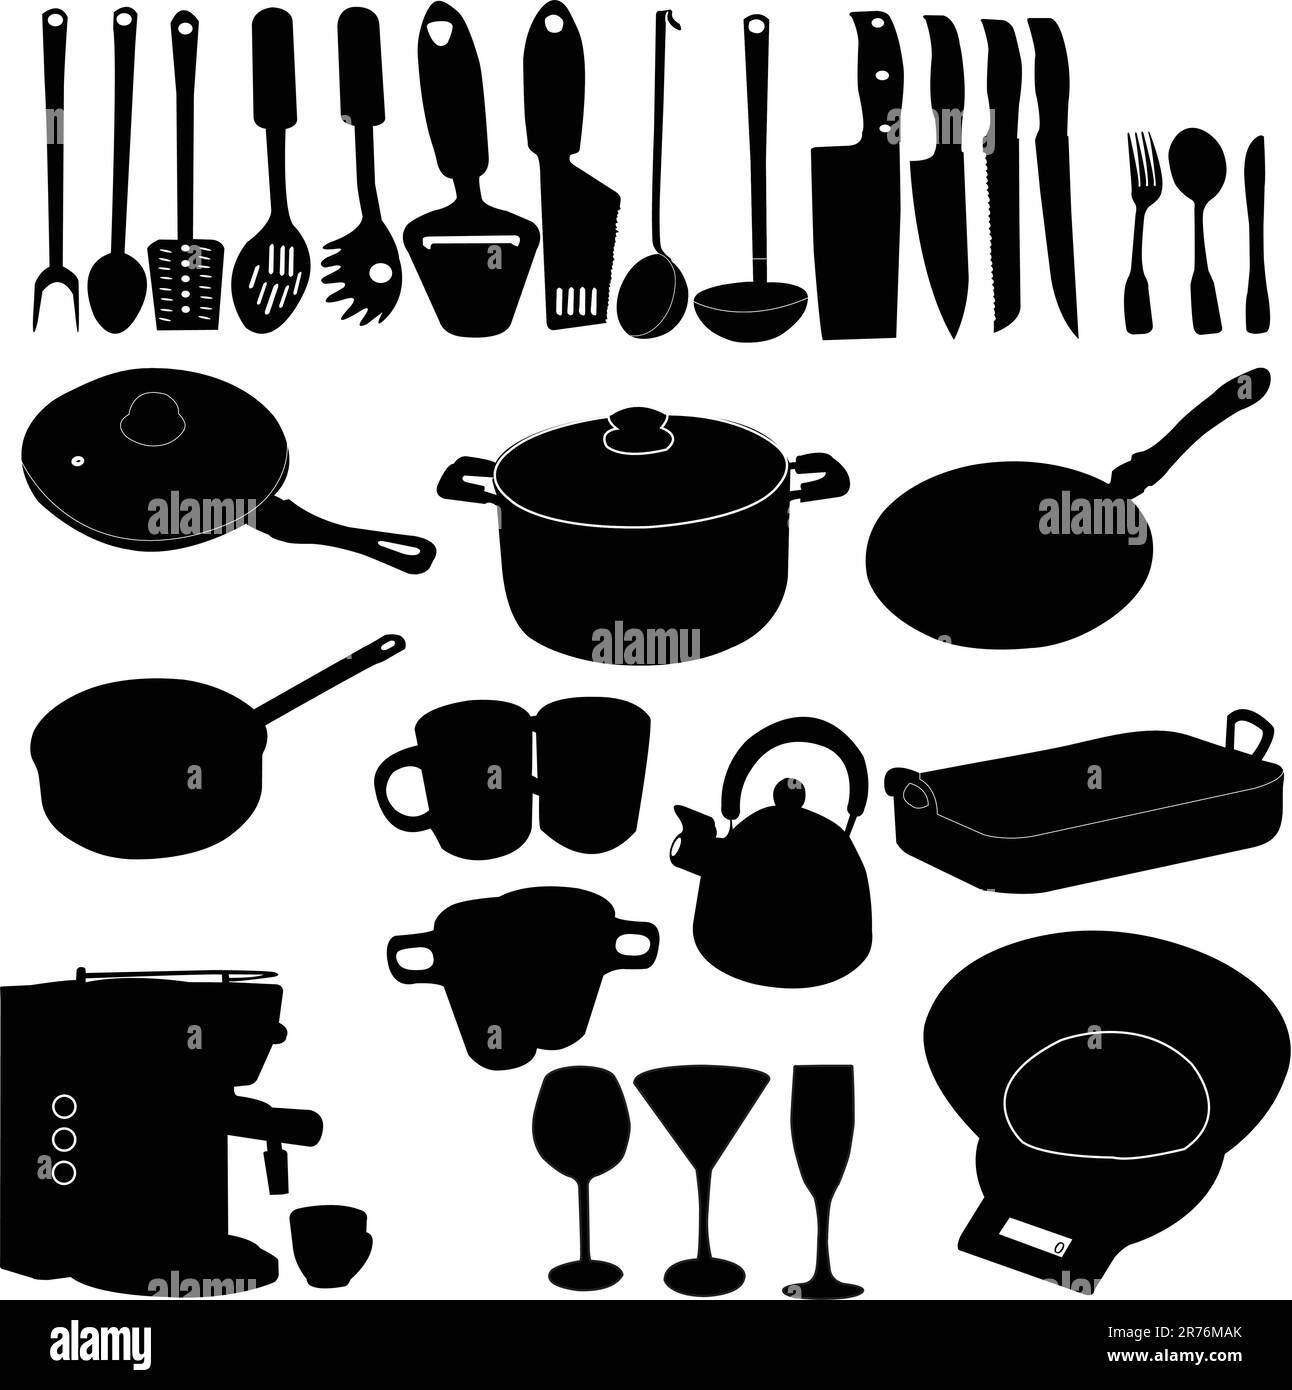 Dibujo De Elementos Utensilios Cocina Estilo Dibujos Animados Dibujados A  Mano PNG ,dibujos Dibujo Del Coche, Dibujo De Dibujos Animados, Dibujo De  Cocina PNG y PSD para Descargar Gratis